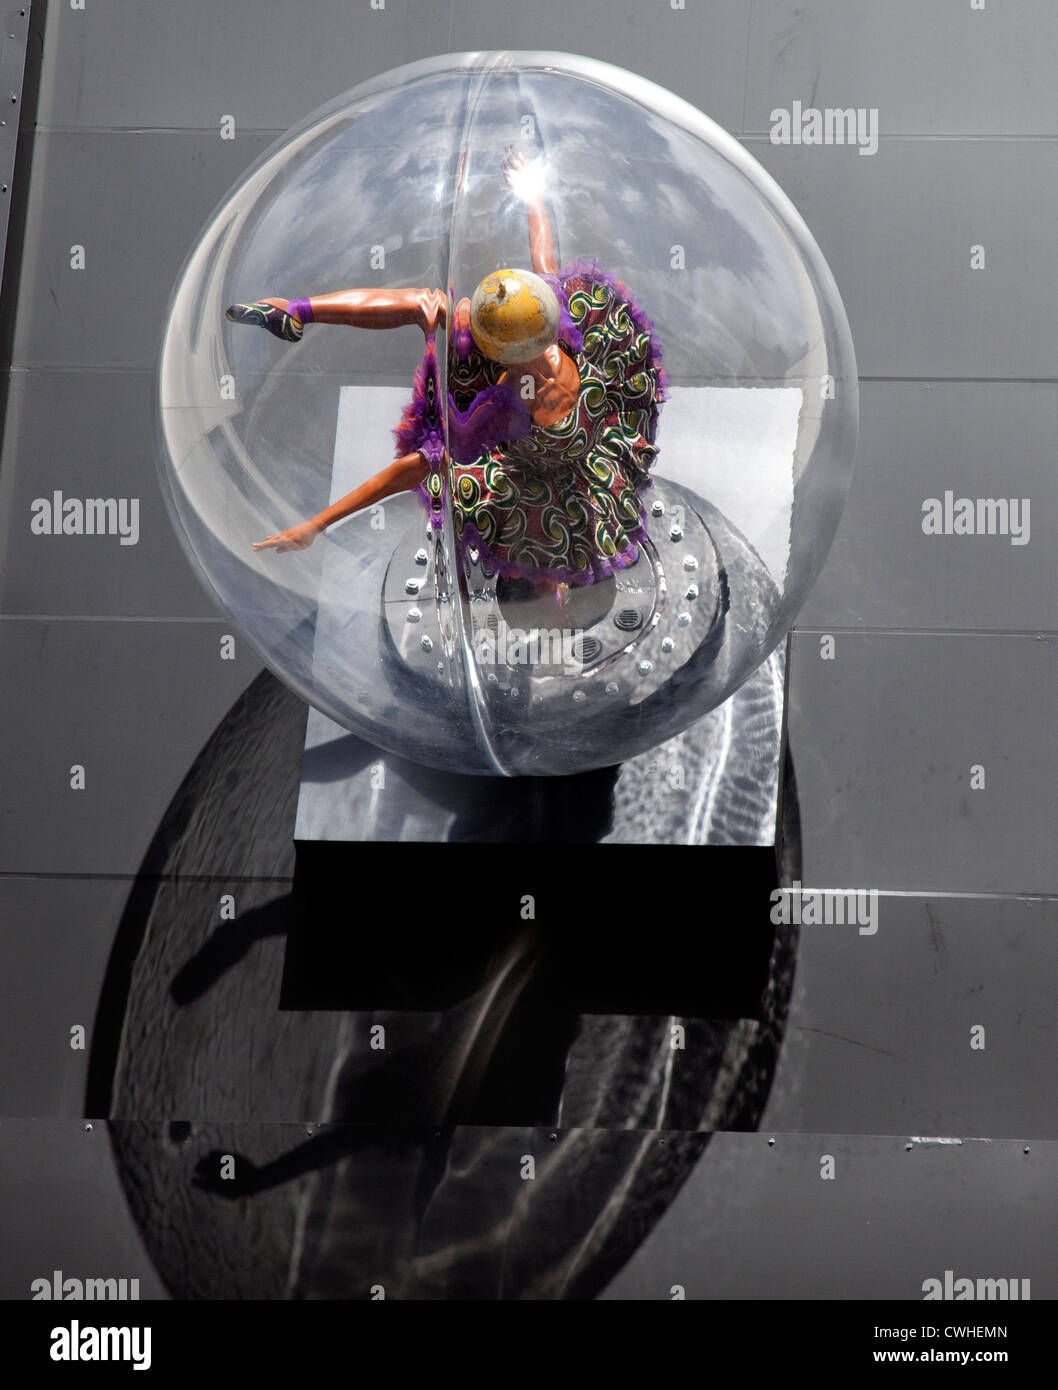 Globe Head Ballerina by Yinka Shonibare at Royal Opera House, London Stock Photo